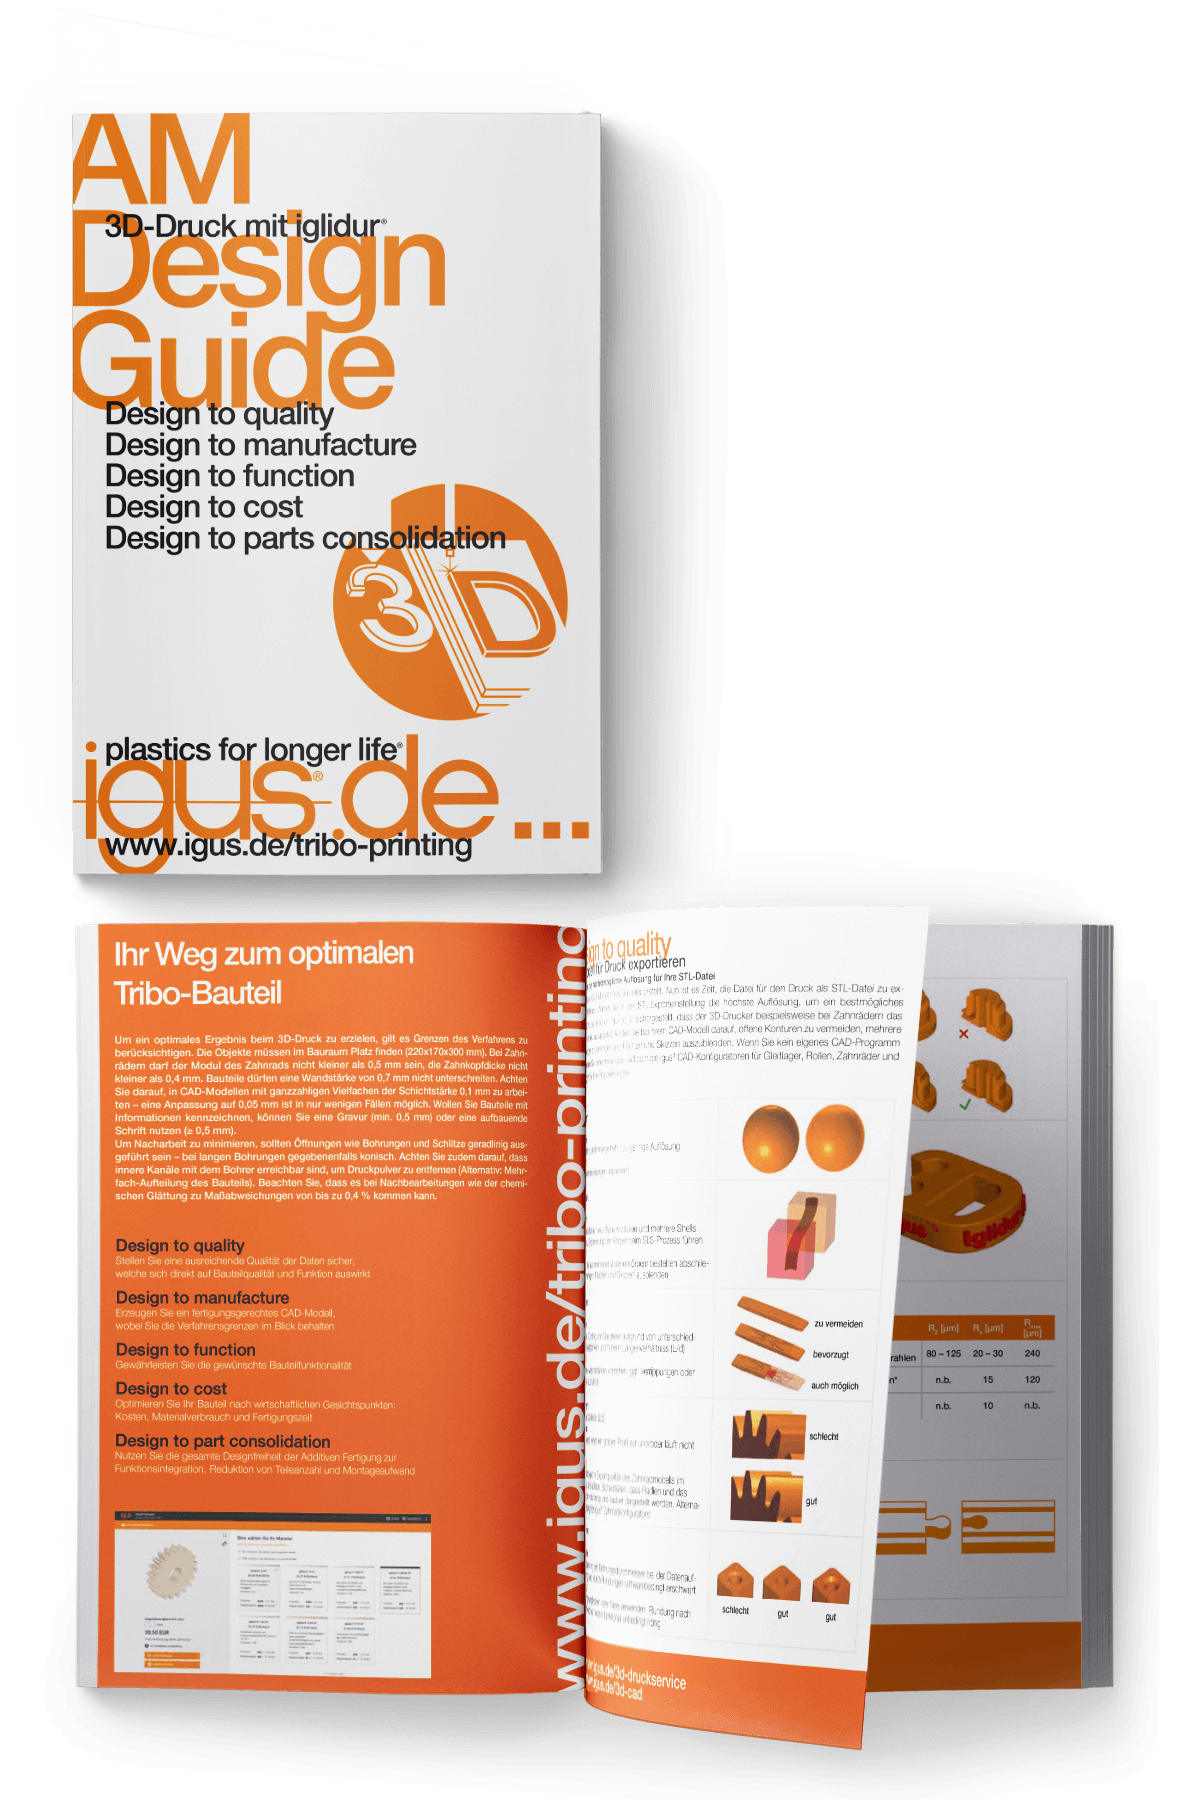 Design Guide für die Additive Fertigung